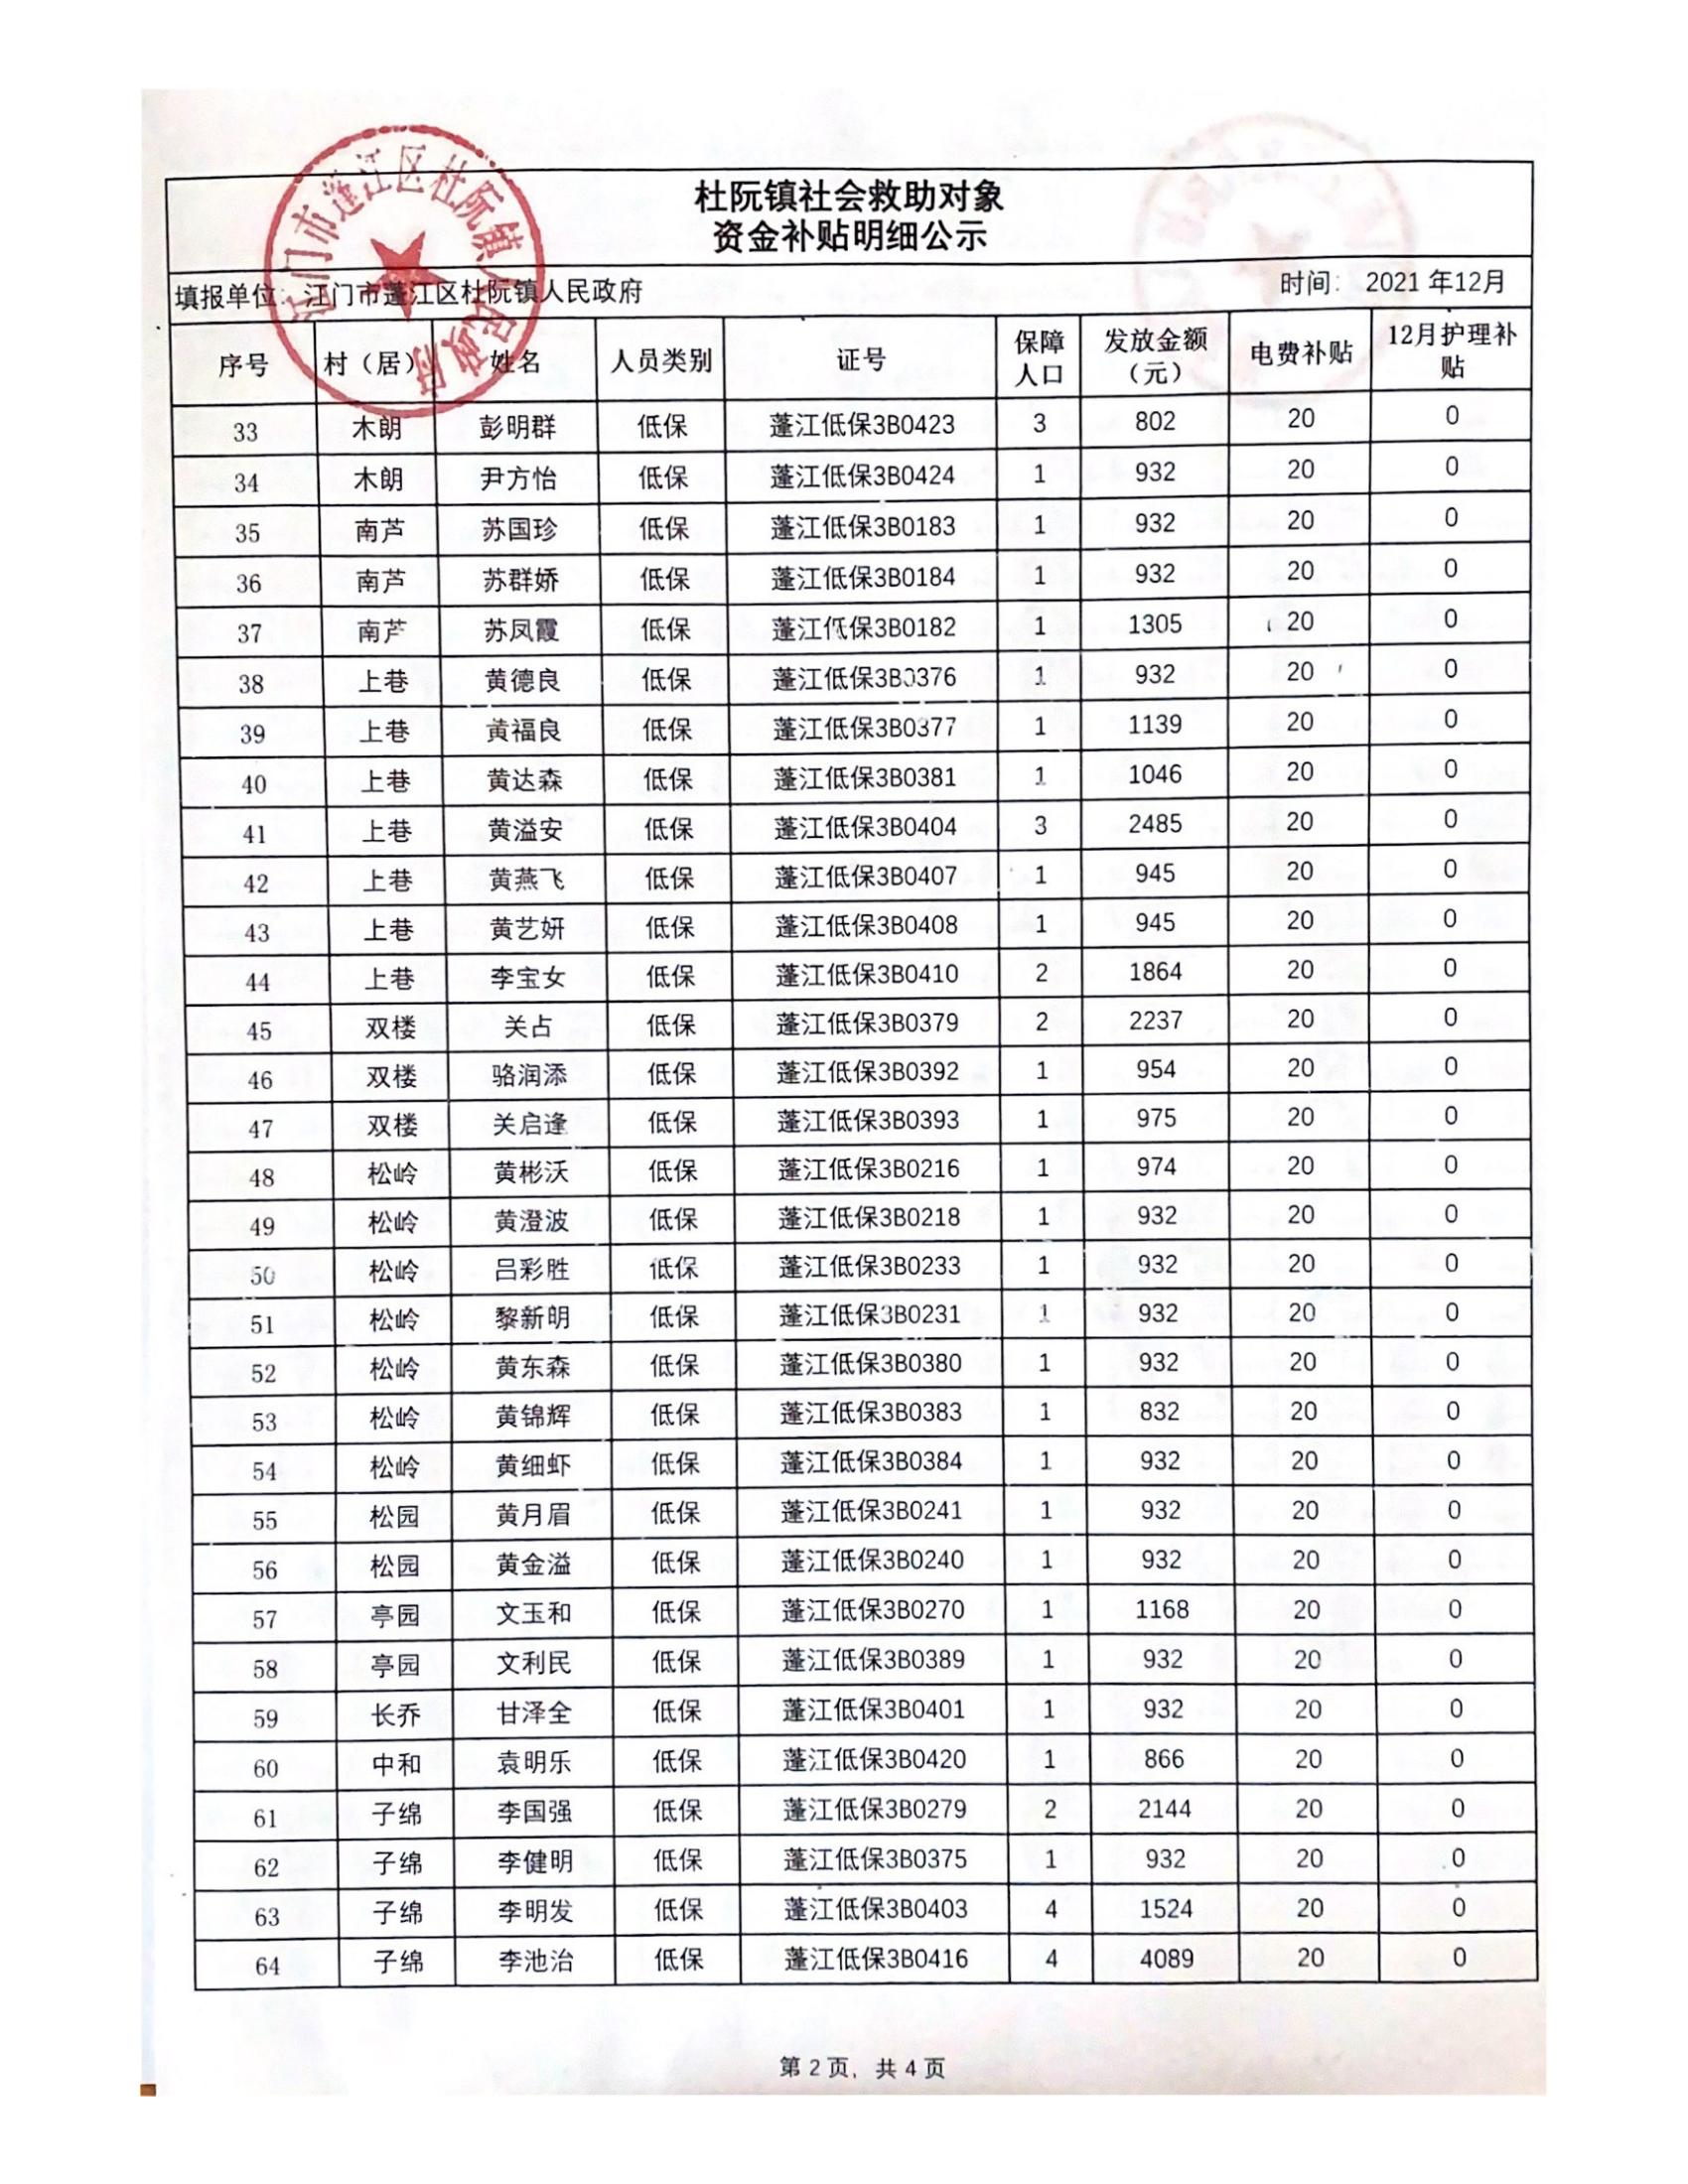 2021年12月杜阮镇社会救助对象资金补贴明细_01.jpg